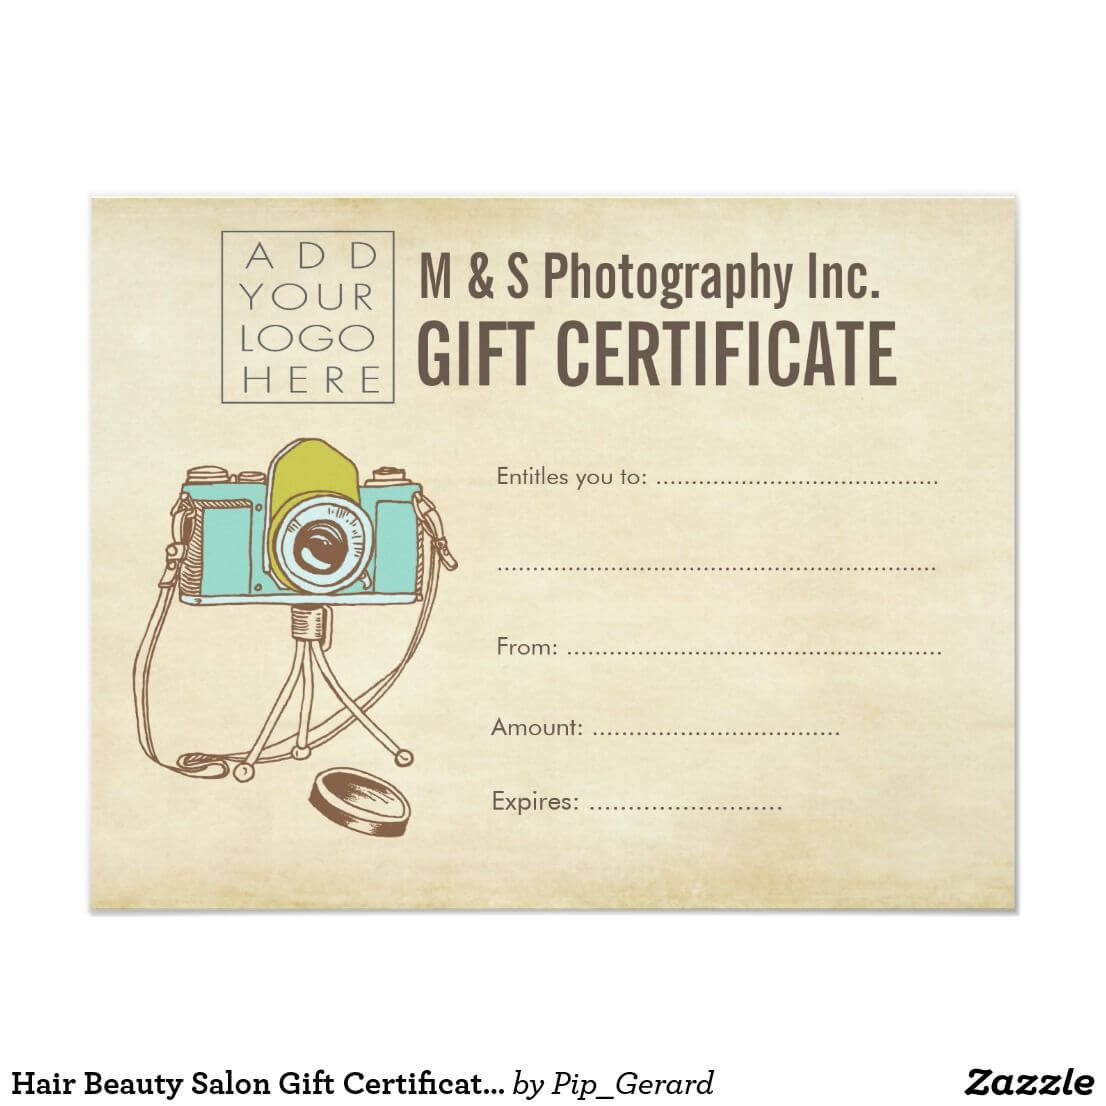 Hair Beauty Salon Gift Certificate Template | Zazzle Throughout Salon Gift Certificate Template